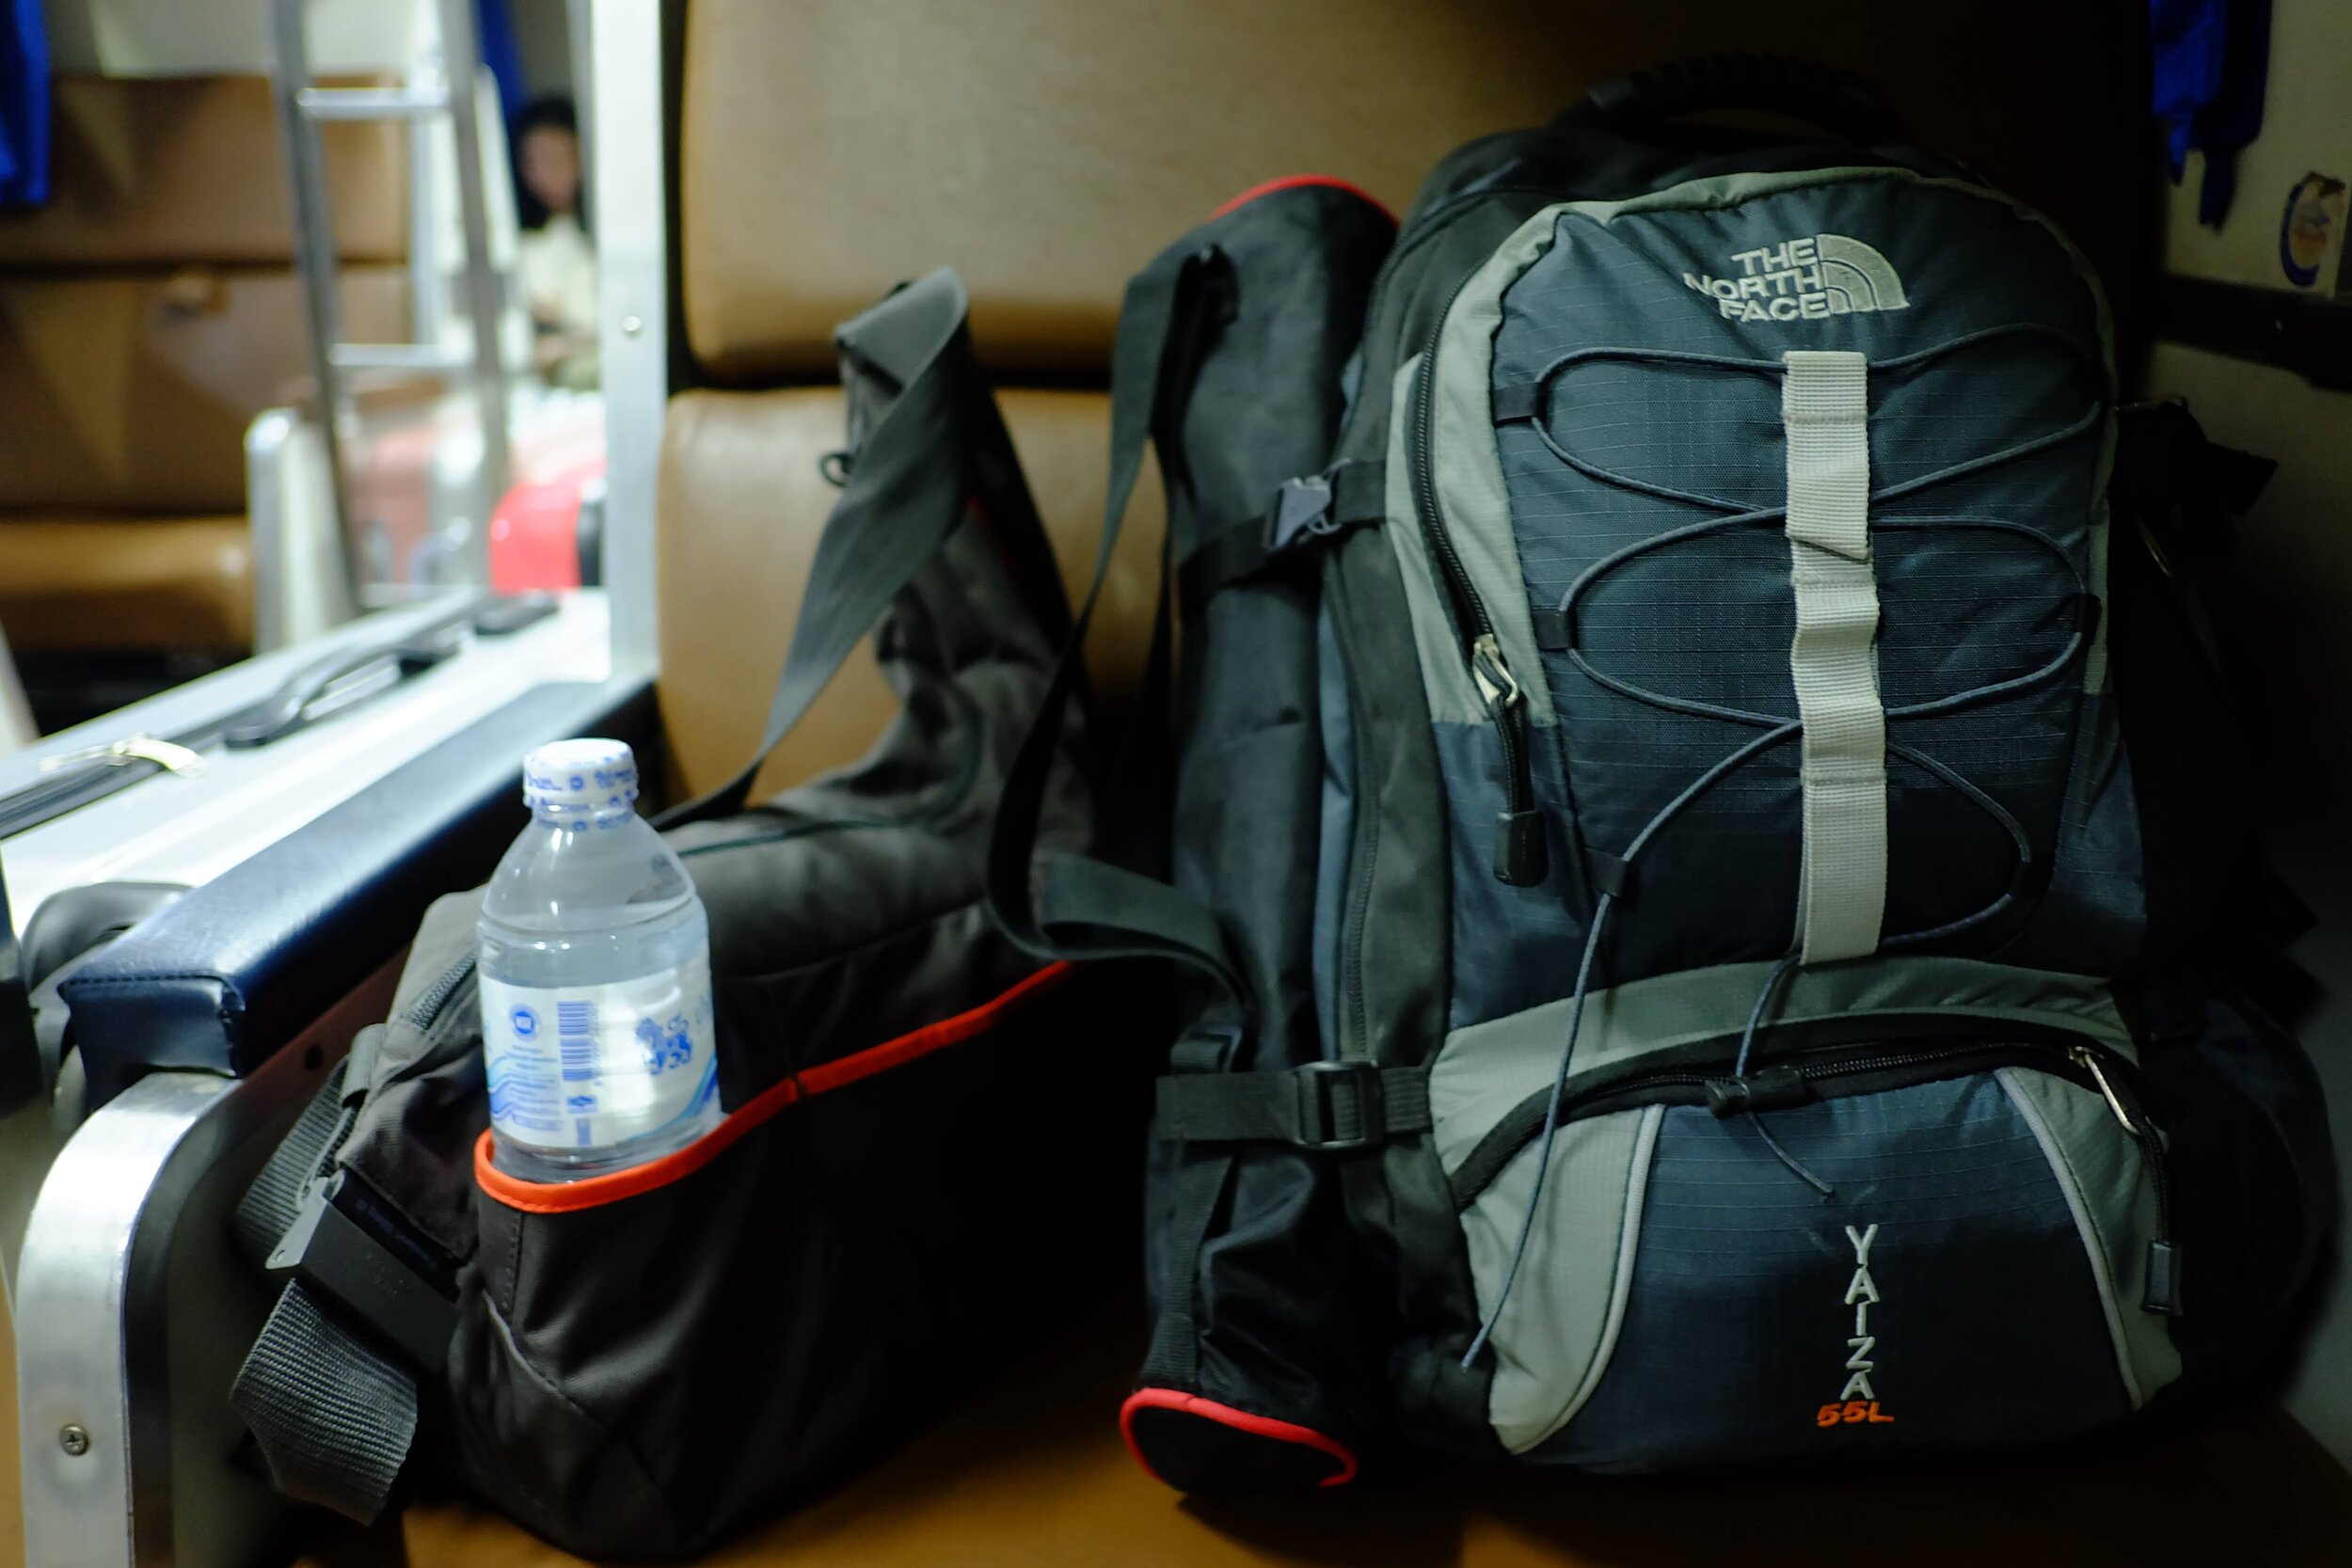 packing-el-camino-sleeping-bag-pack-walk-backpack.jpg